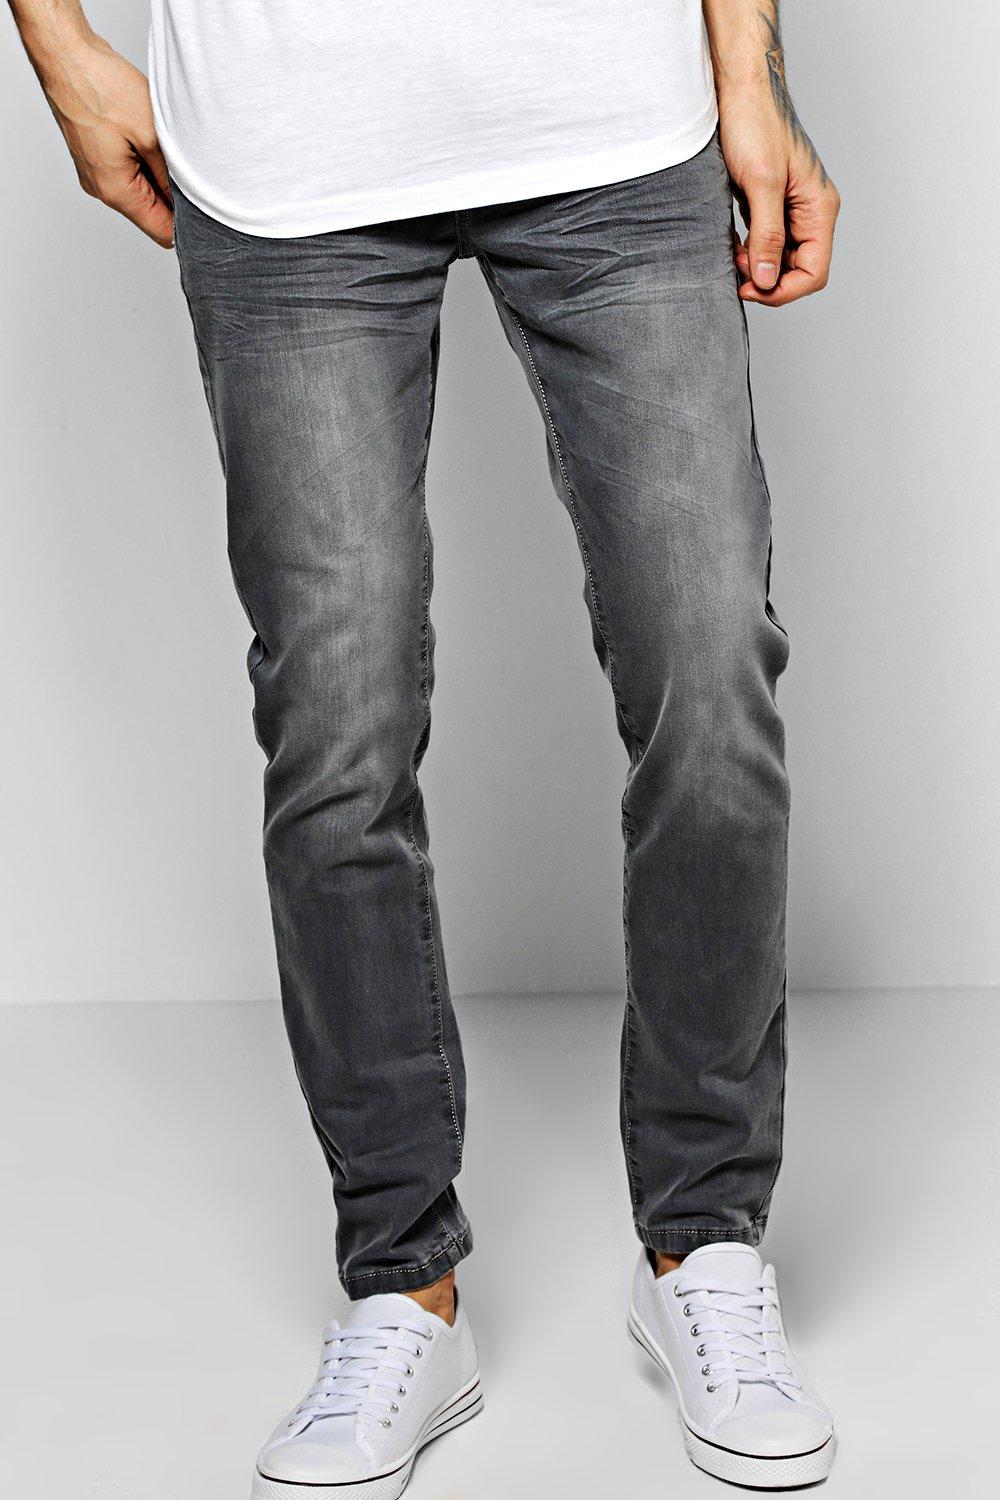 stone grey jeans